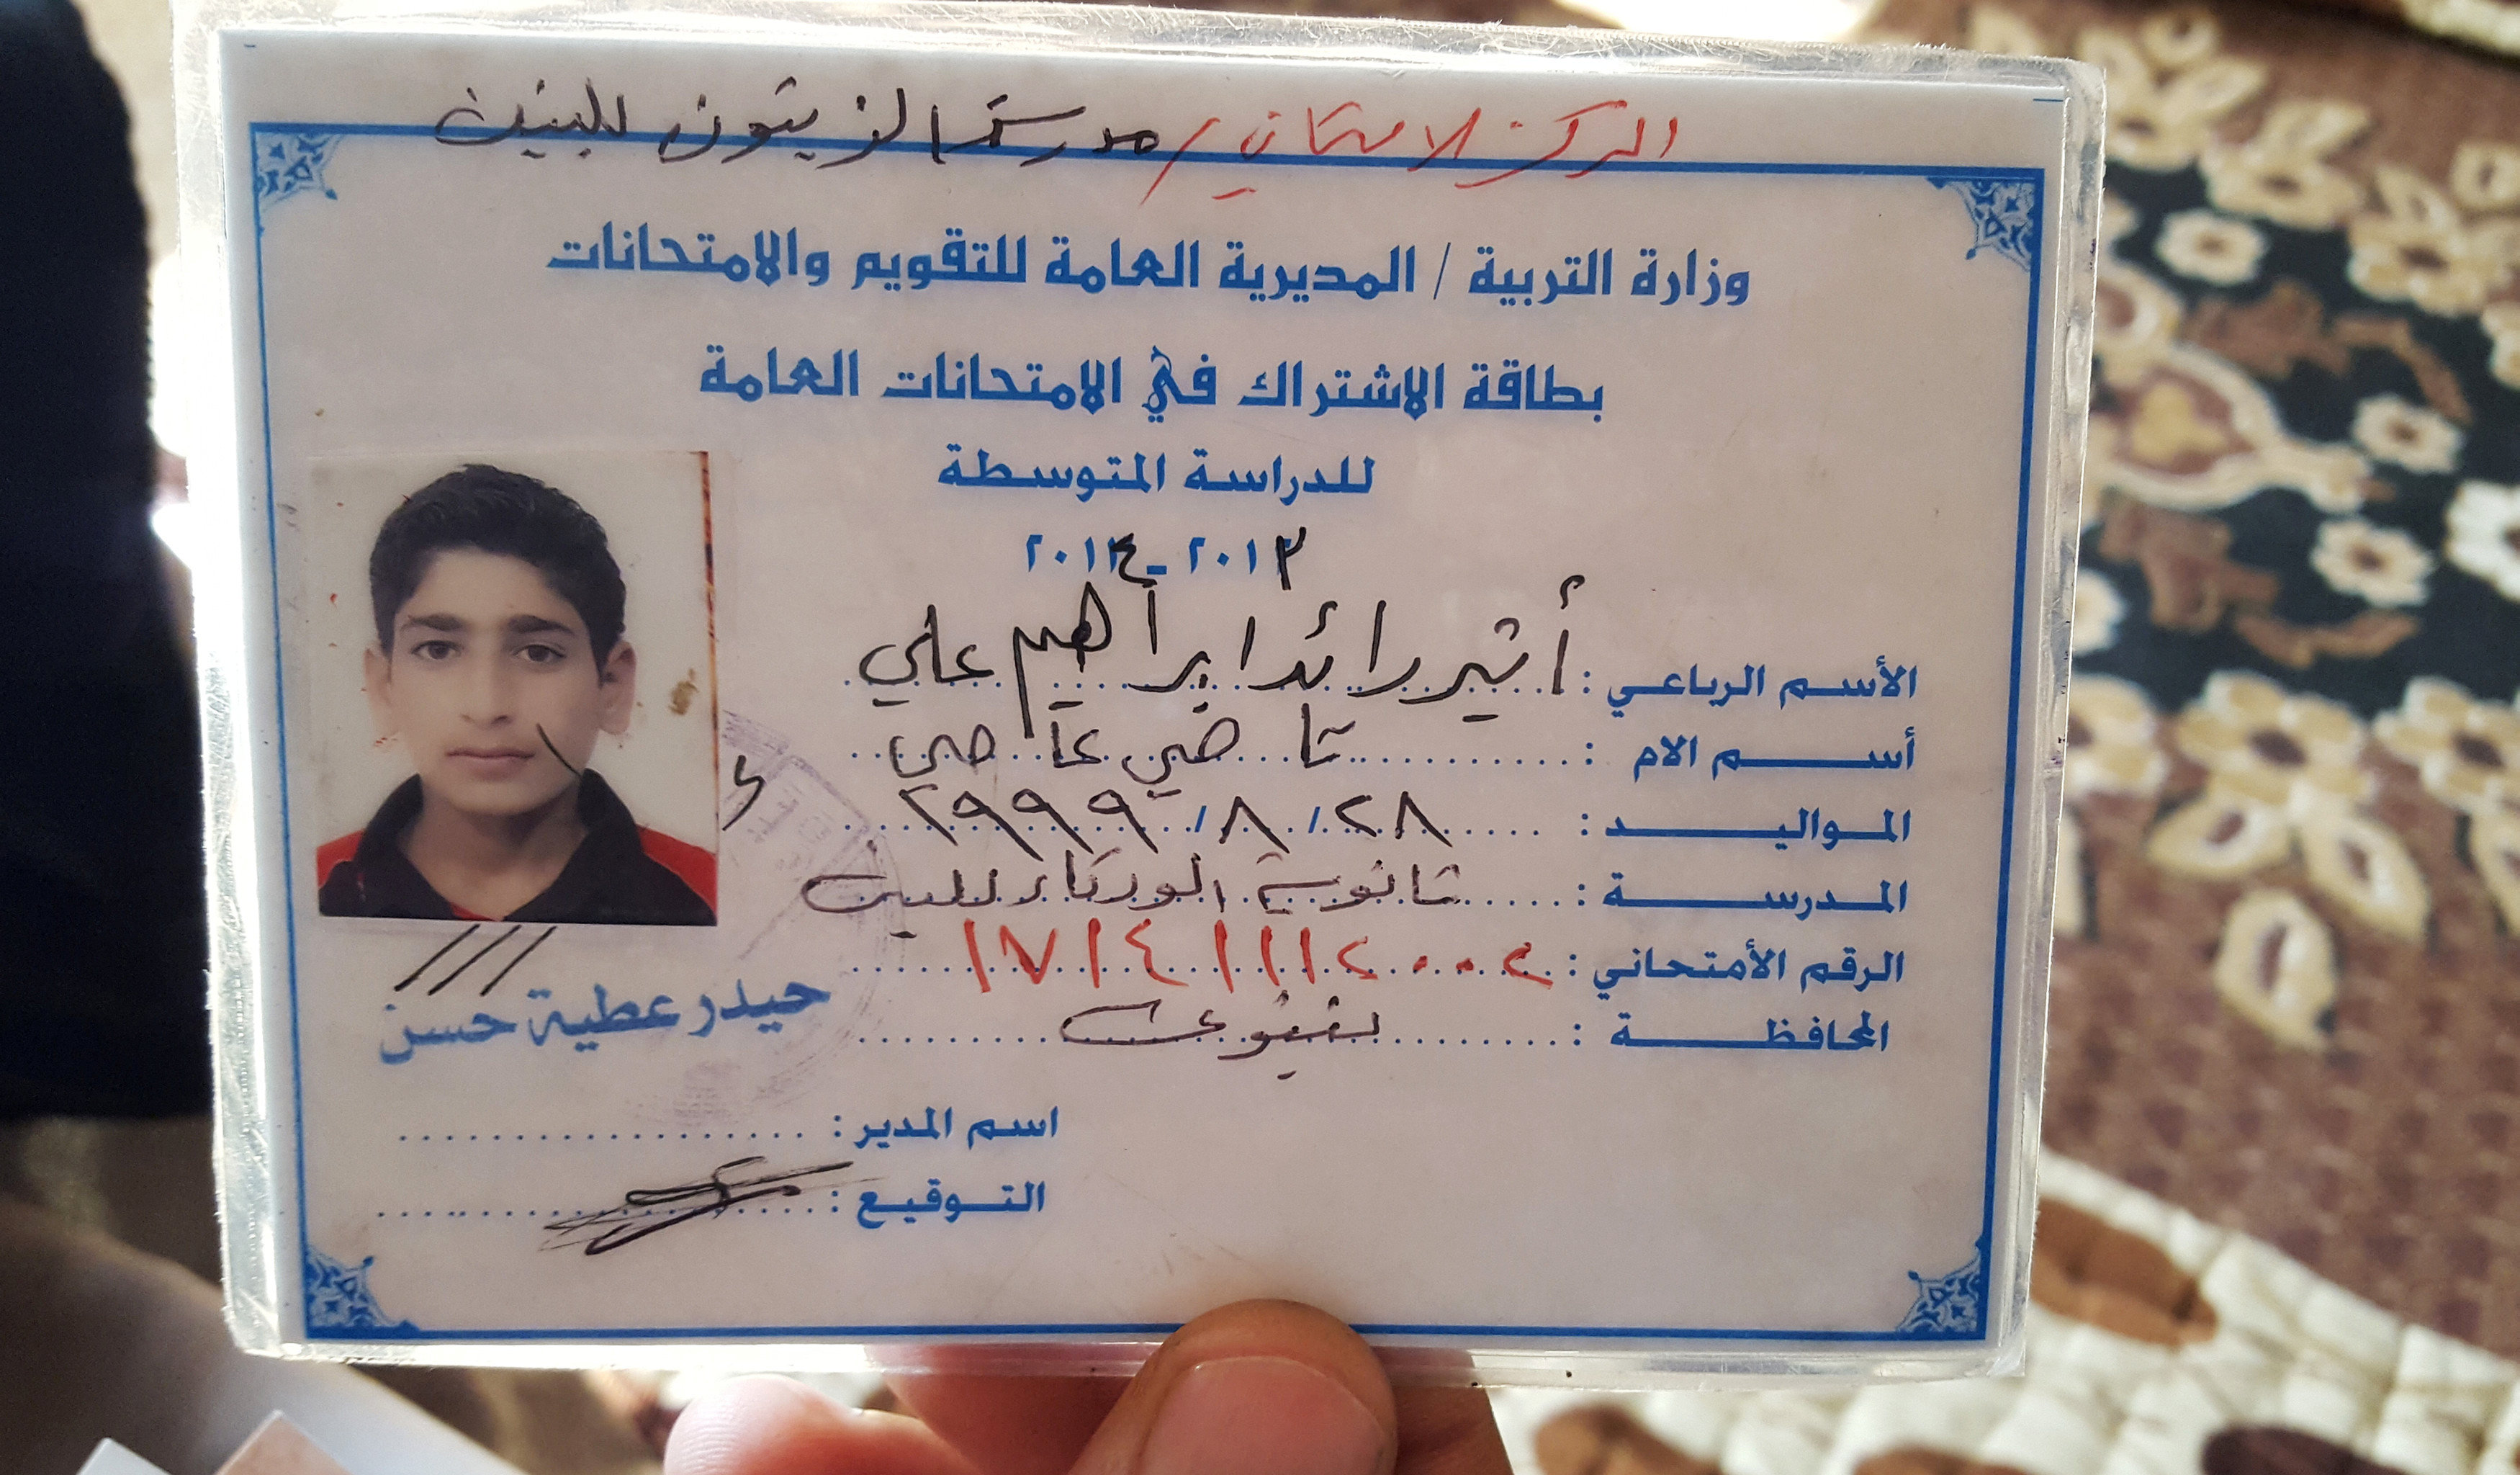 بطاقة الالتحاق بالامتحان لشاب عراقى قبل انضمامه لداعش